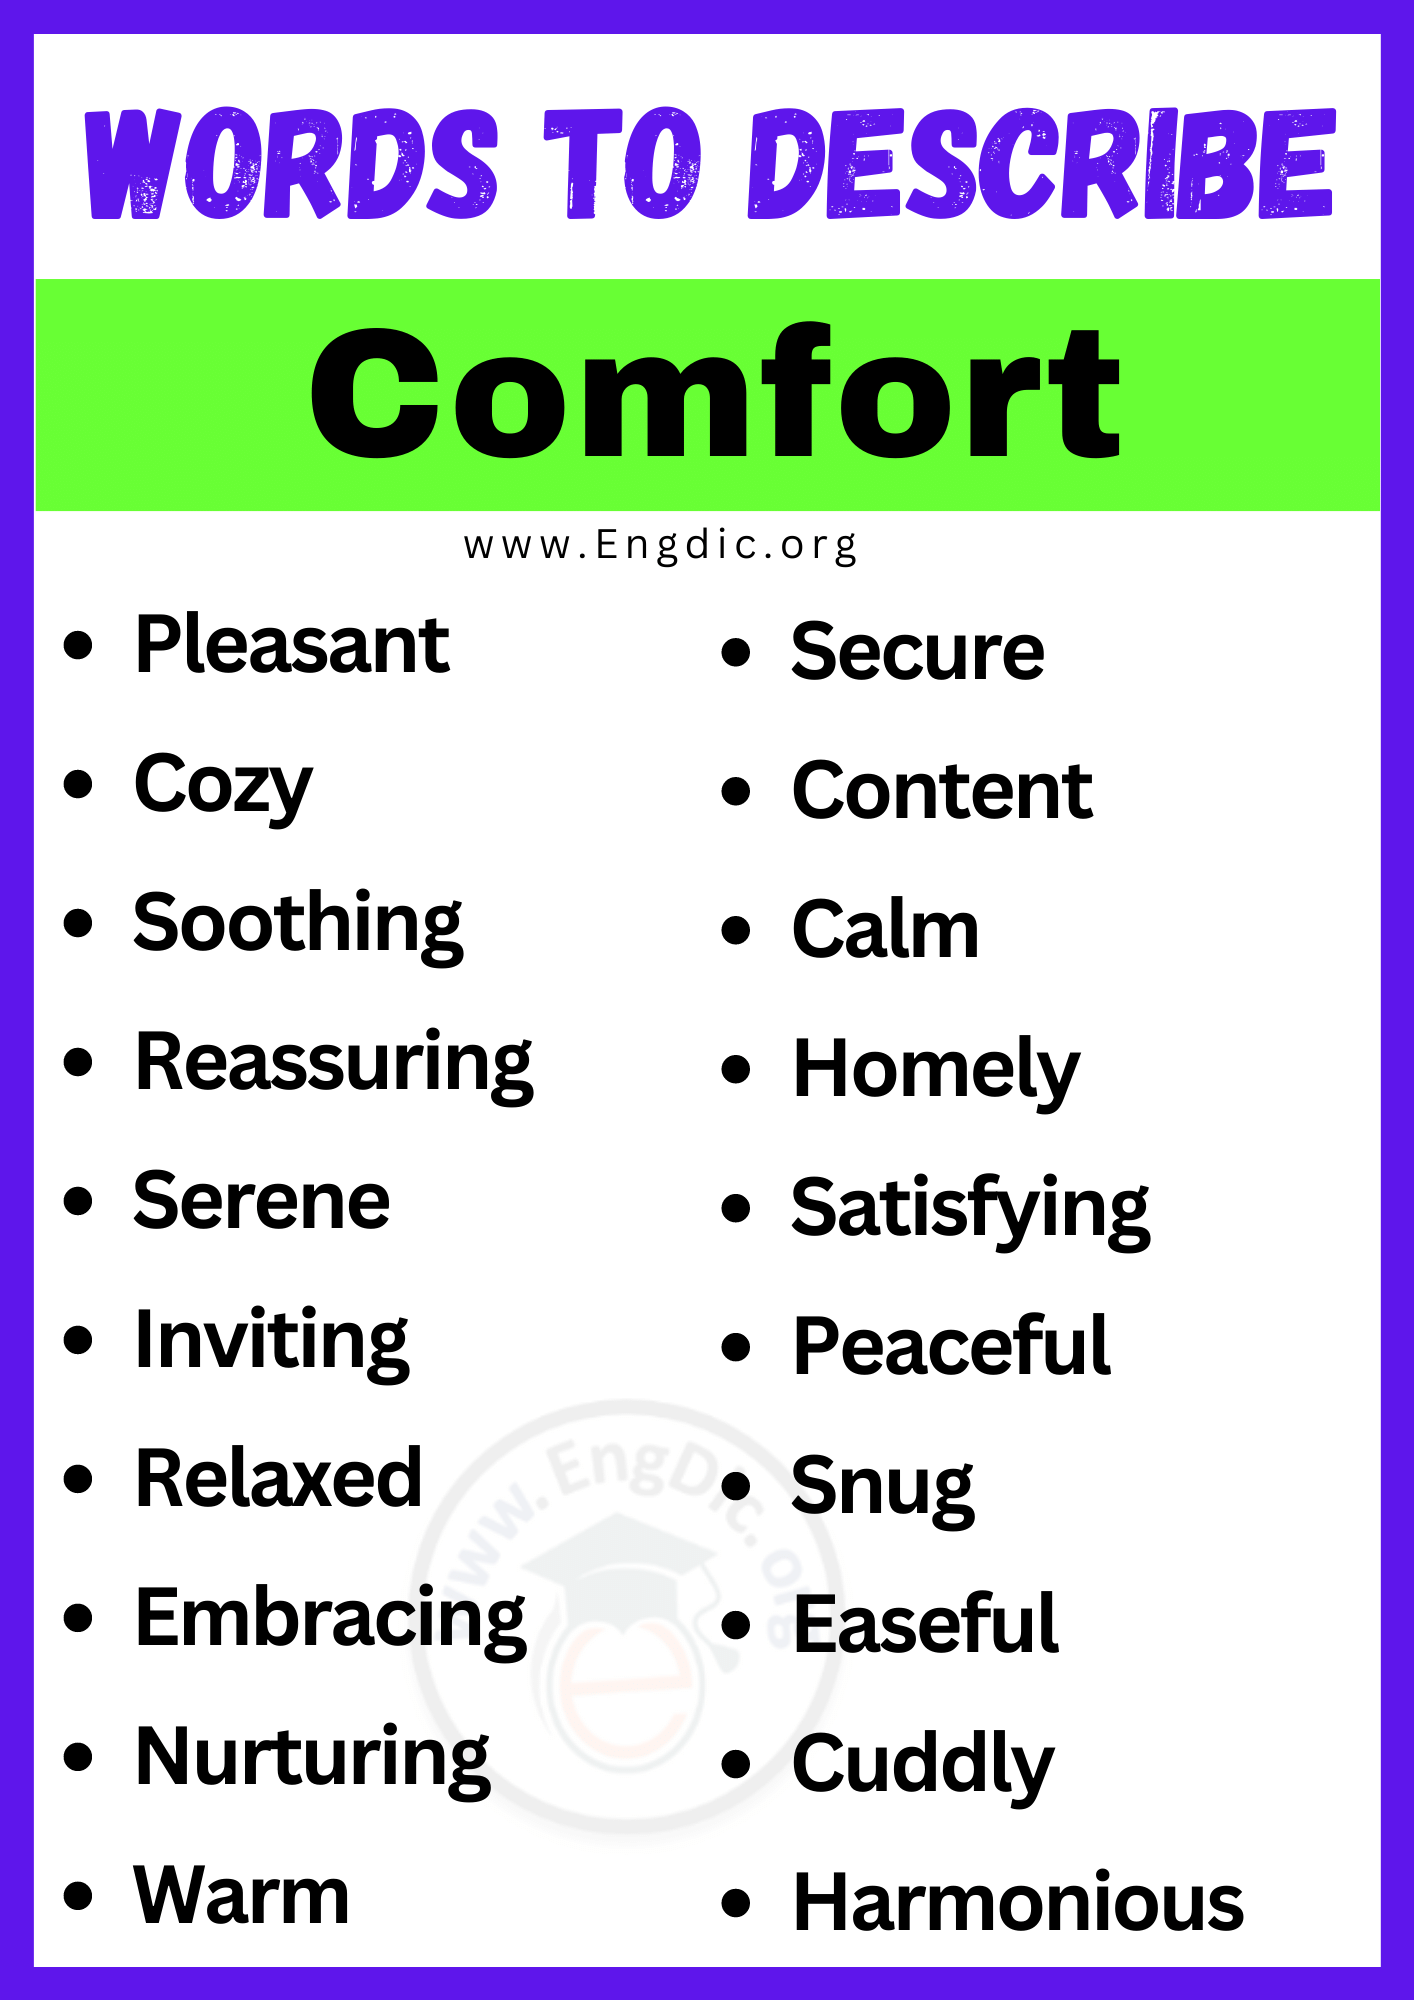 Words to Describe Comfort